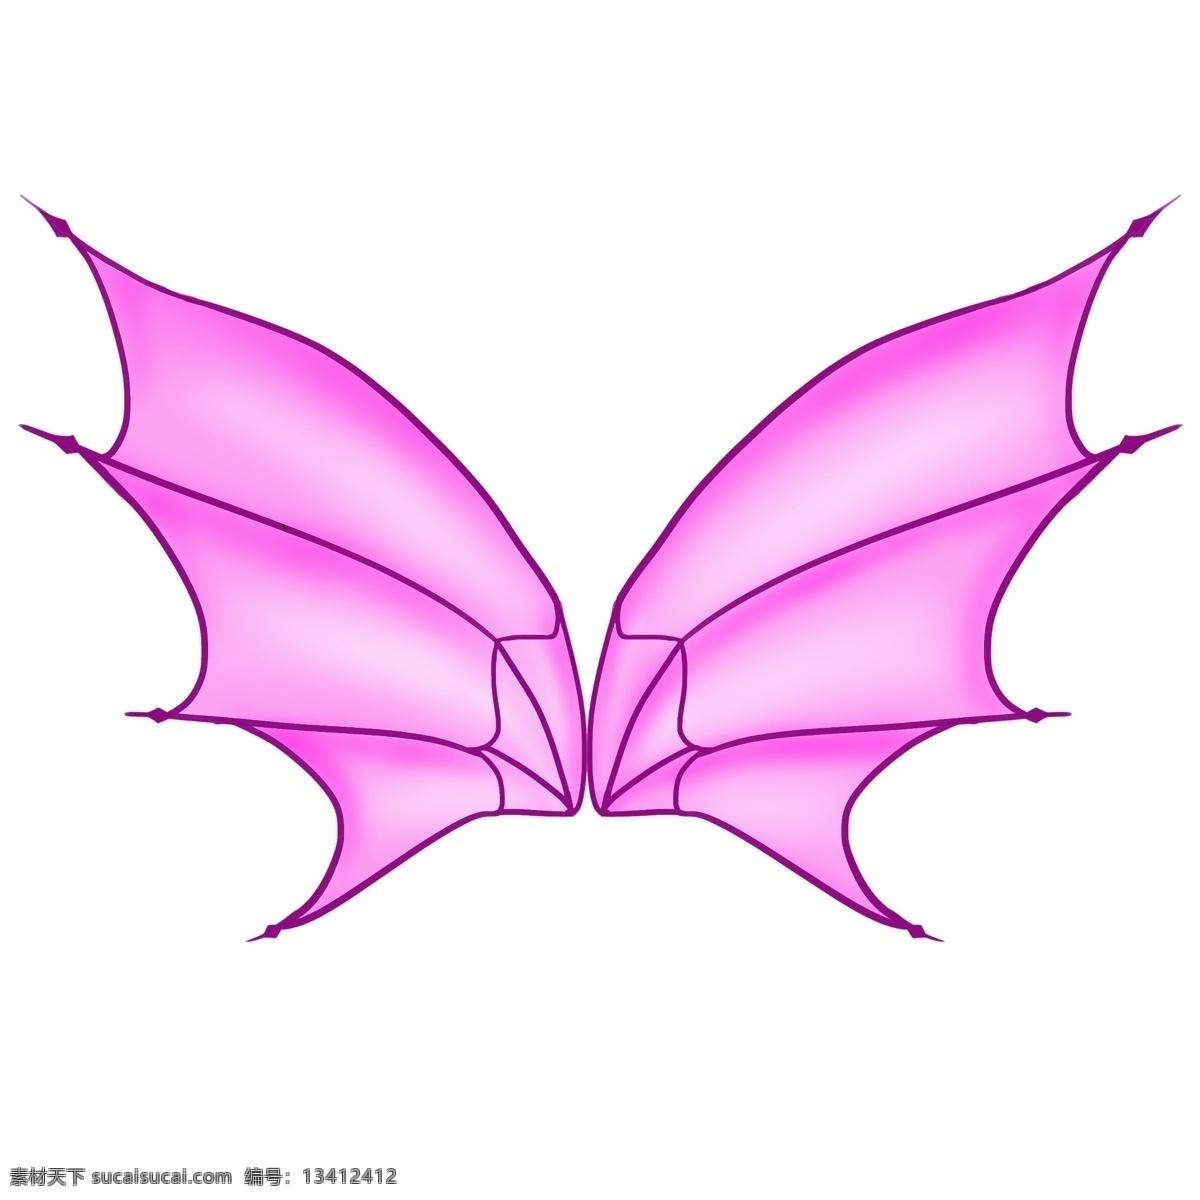 紫色 蝙蝠 翅膀 插画 紫色的翅膀 蝙蝠翅膀 小动物翅膀 唯美的翅膀 精美的大翅膀 翅膀装饰插画